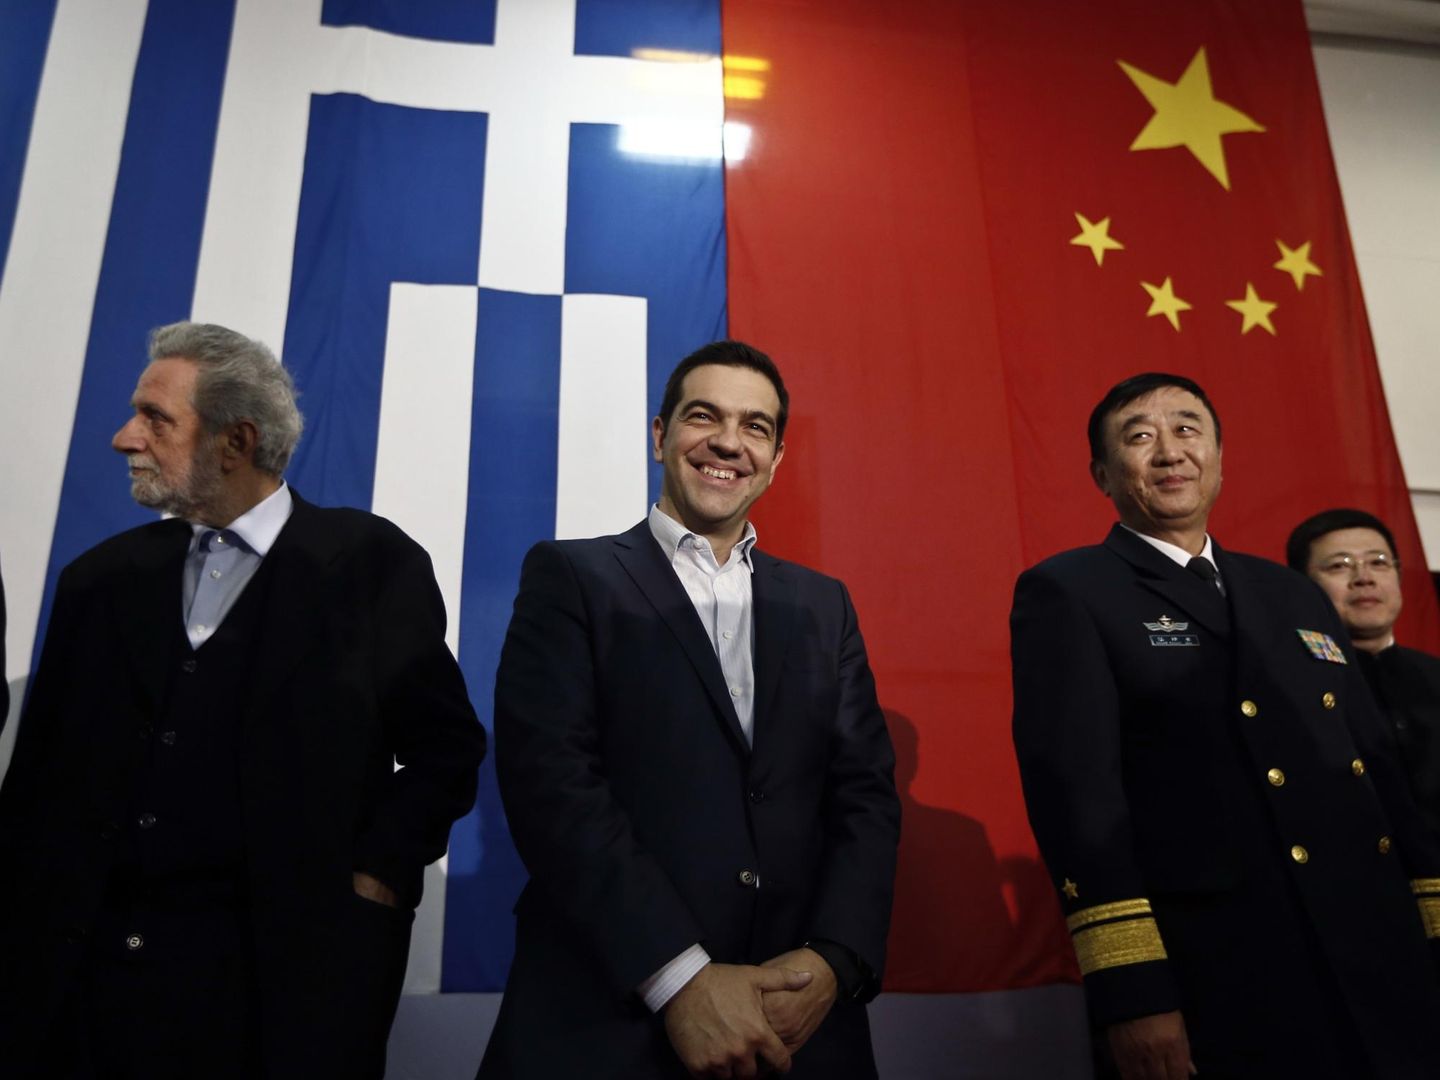 El primer ministro griego Alexis Tsipras a bordo de la fragata Changbaishan, atracada en el puerto del Pireo, en febrero de 2015. (Reuters)